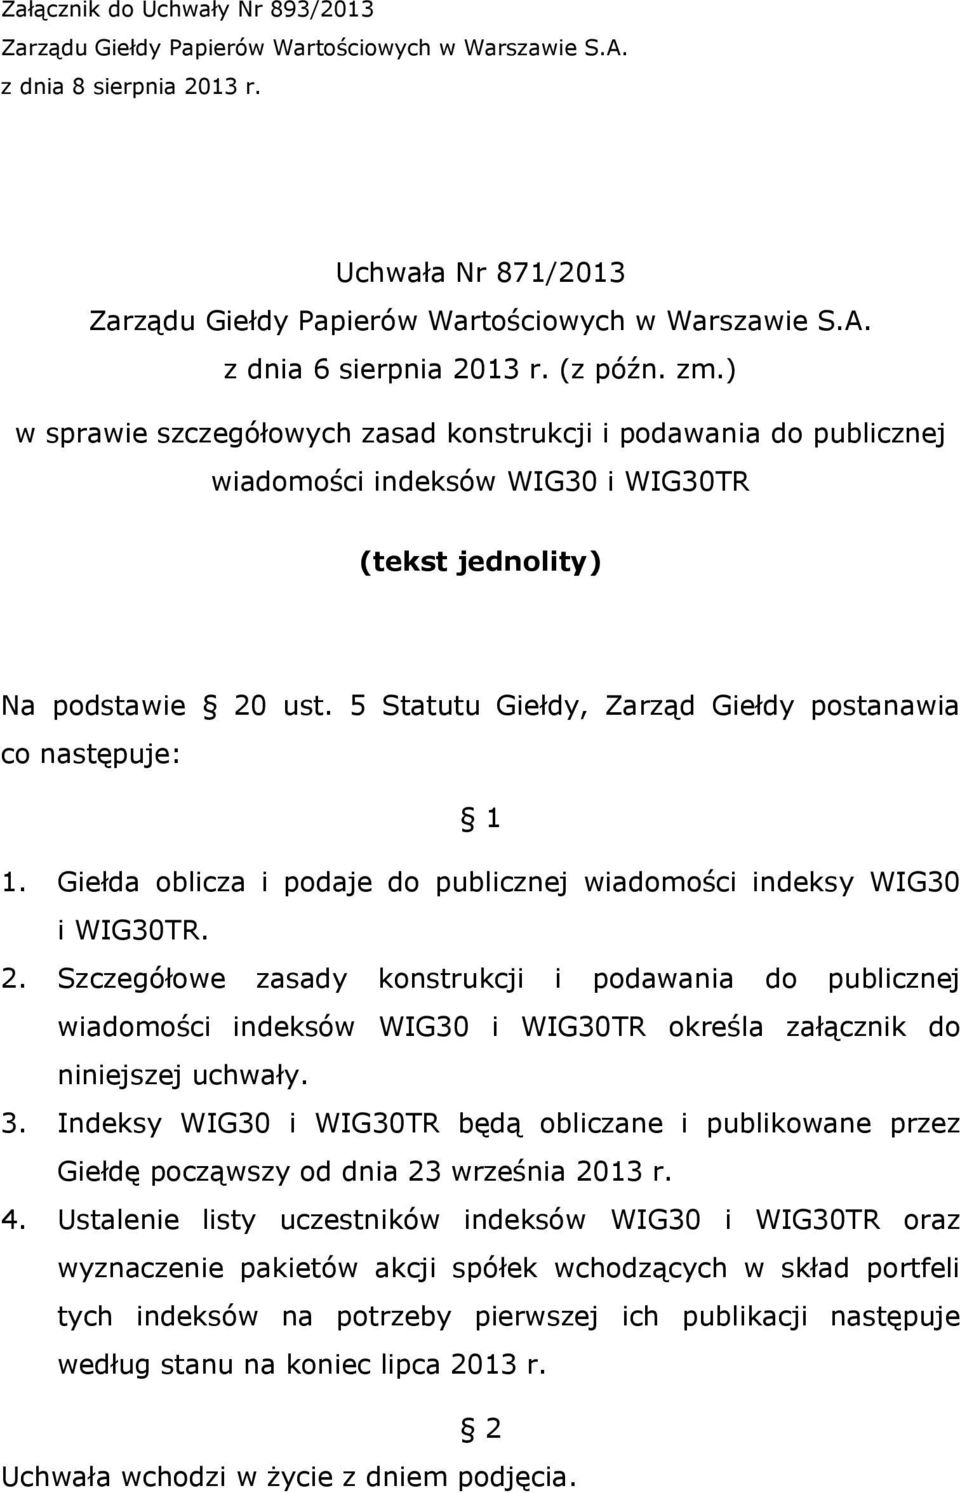 5 Statutu Giełdy, Zarząd Giełdy postanawia co następuje: 1 1. Giełda oblicza i podaje do publicznej wiadomości indeksy WIG30 i WIG30TR. 2.